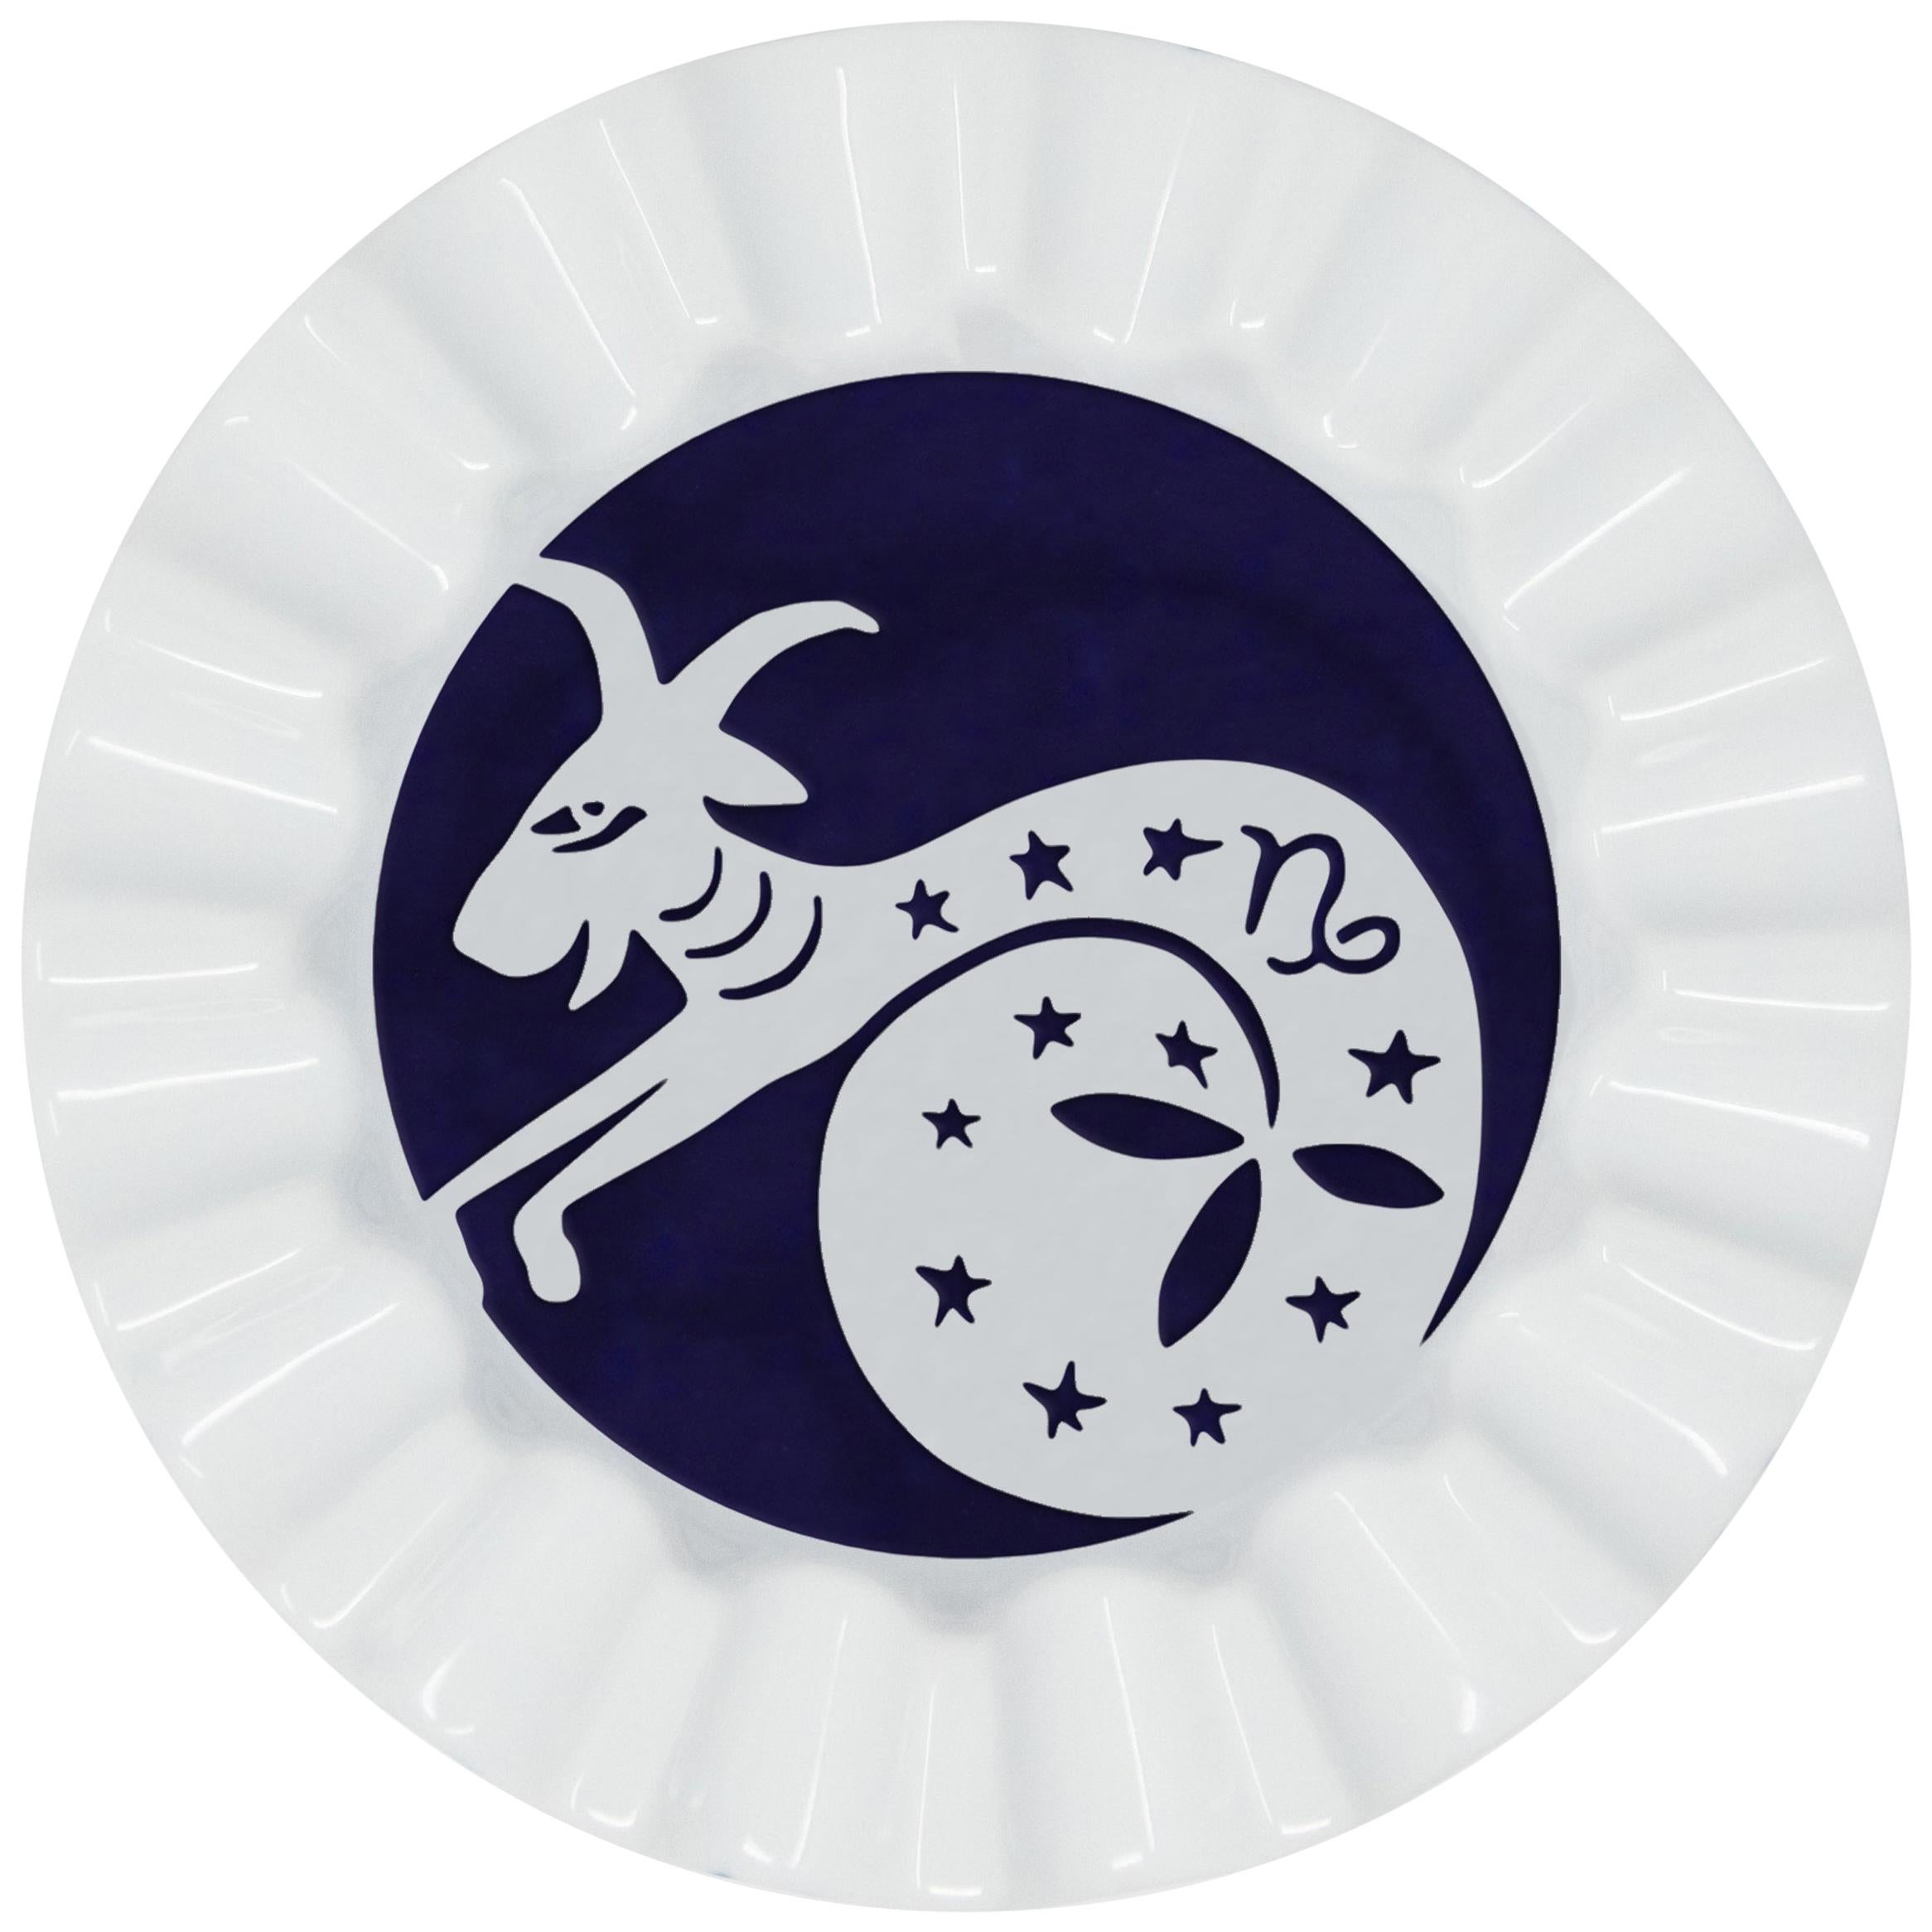 Plateau porte-clés zodiaque Capricorn en porcelaine de Viso 0101-CP